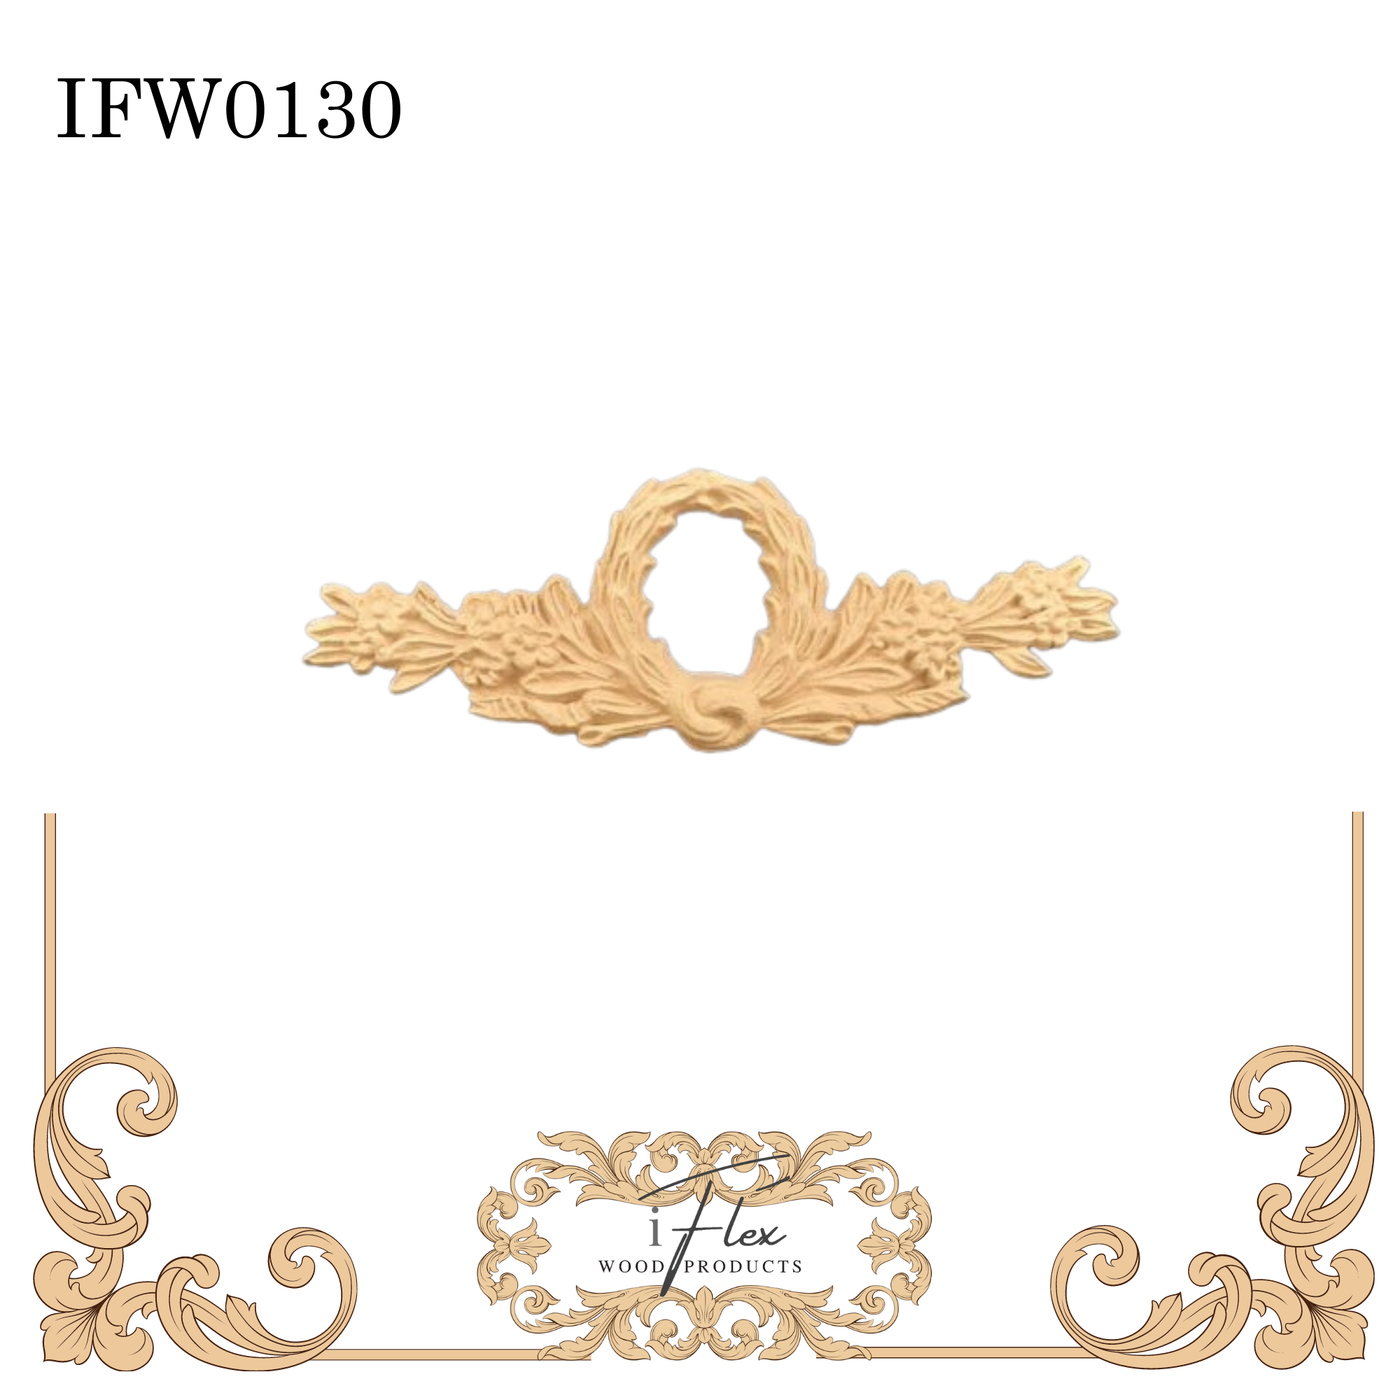 IFW 0130